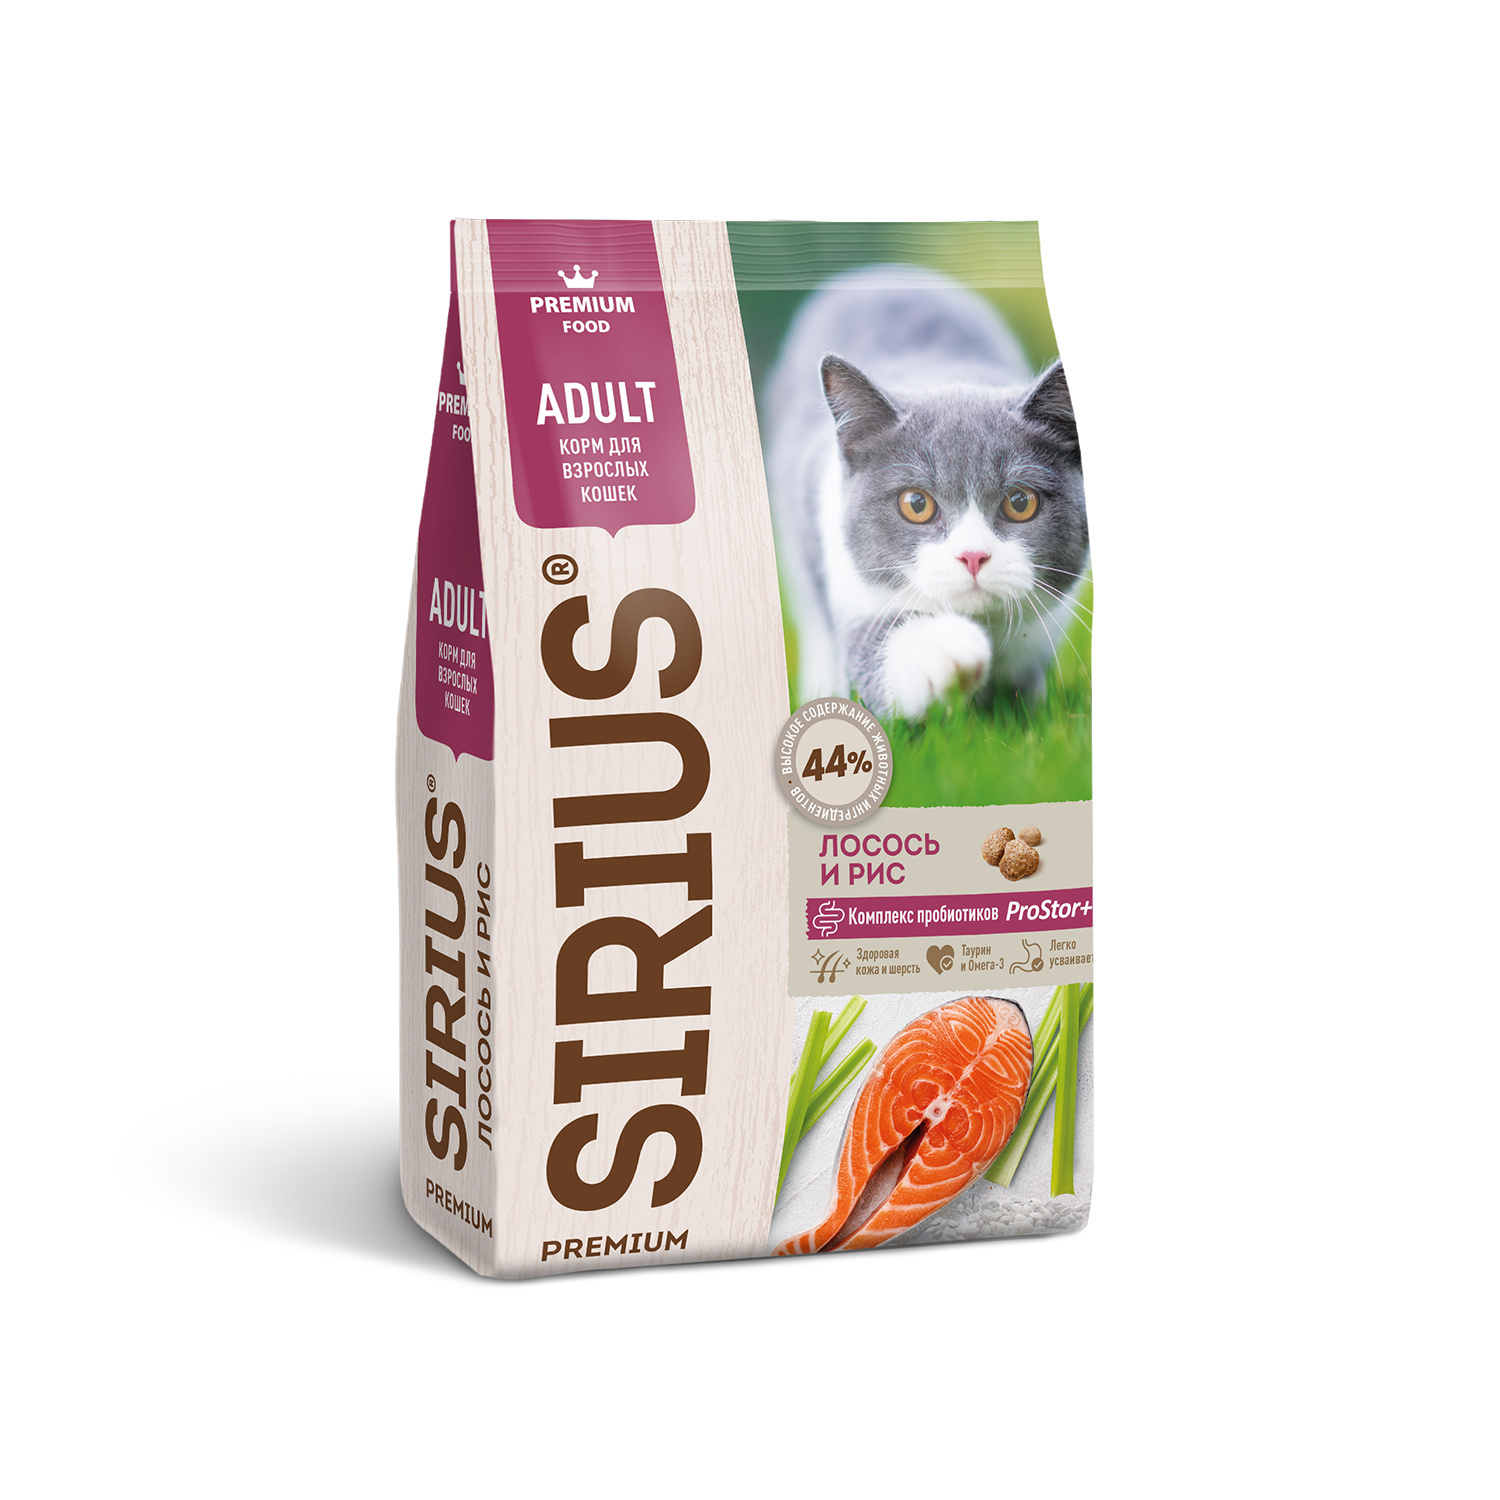 Sirius сухой корм для кошек, лосось и рис (400 г) Sirius сухой корм для кошек, лосось и рис (400 г) - фото 1